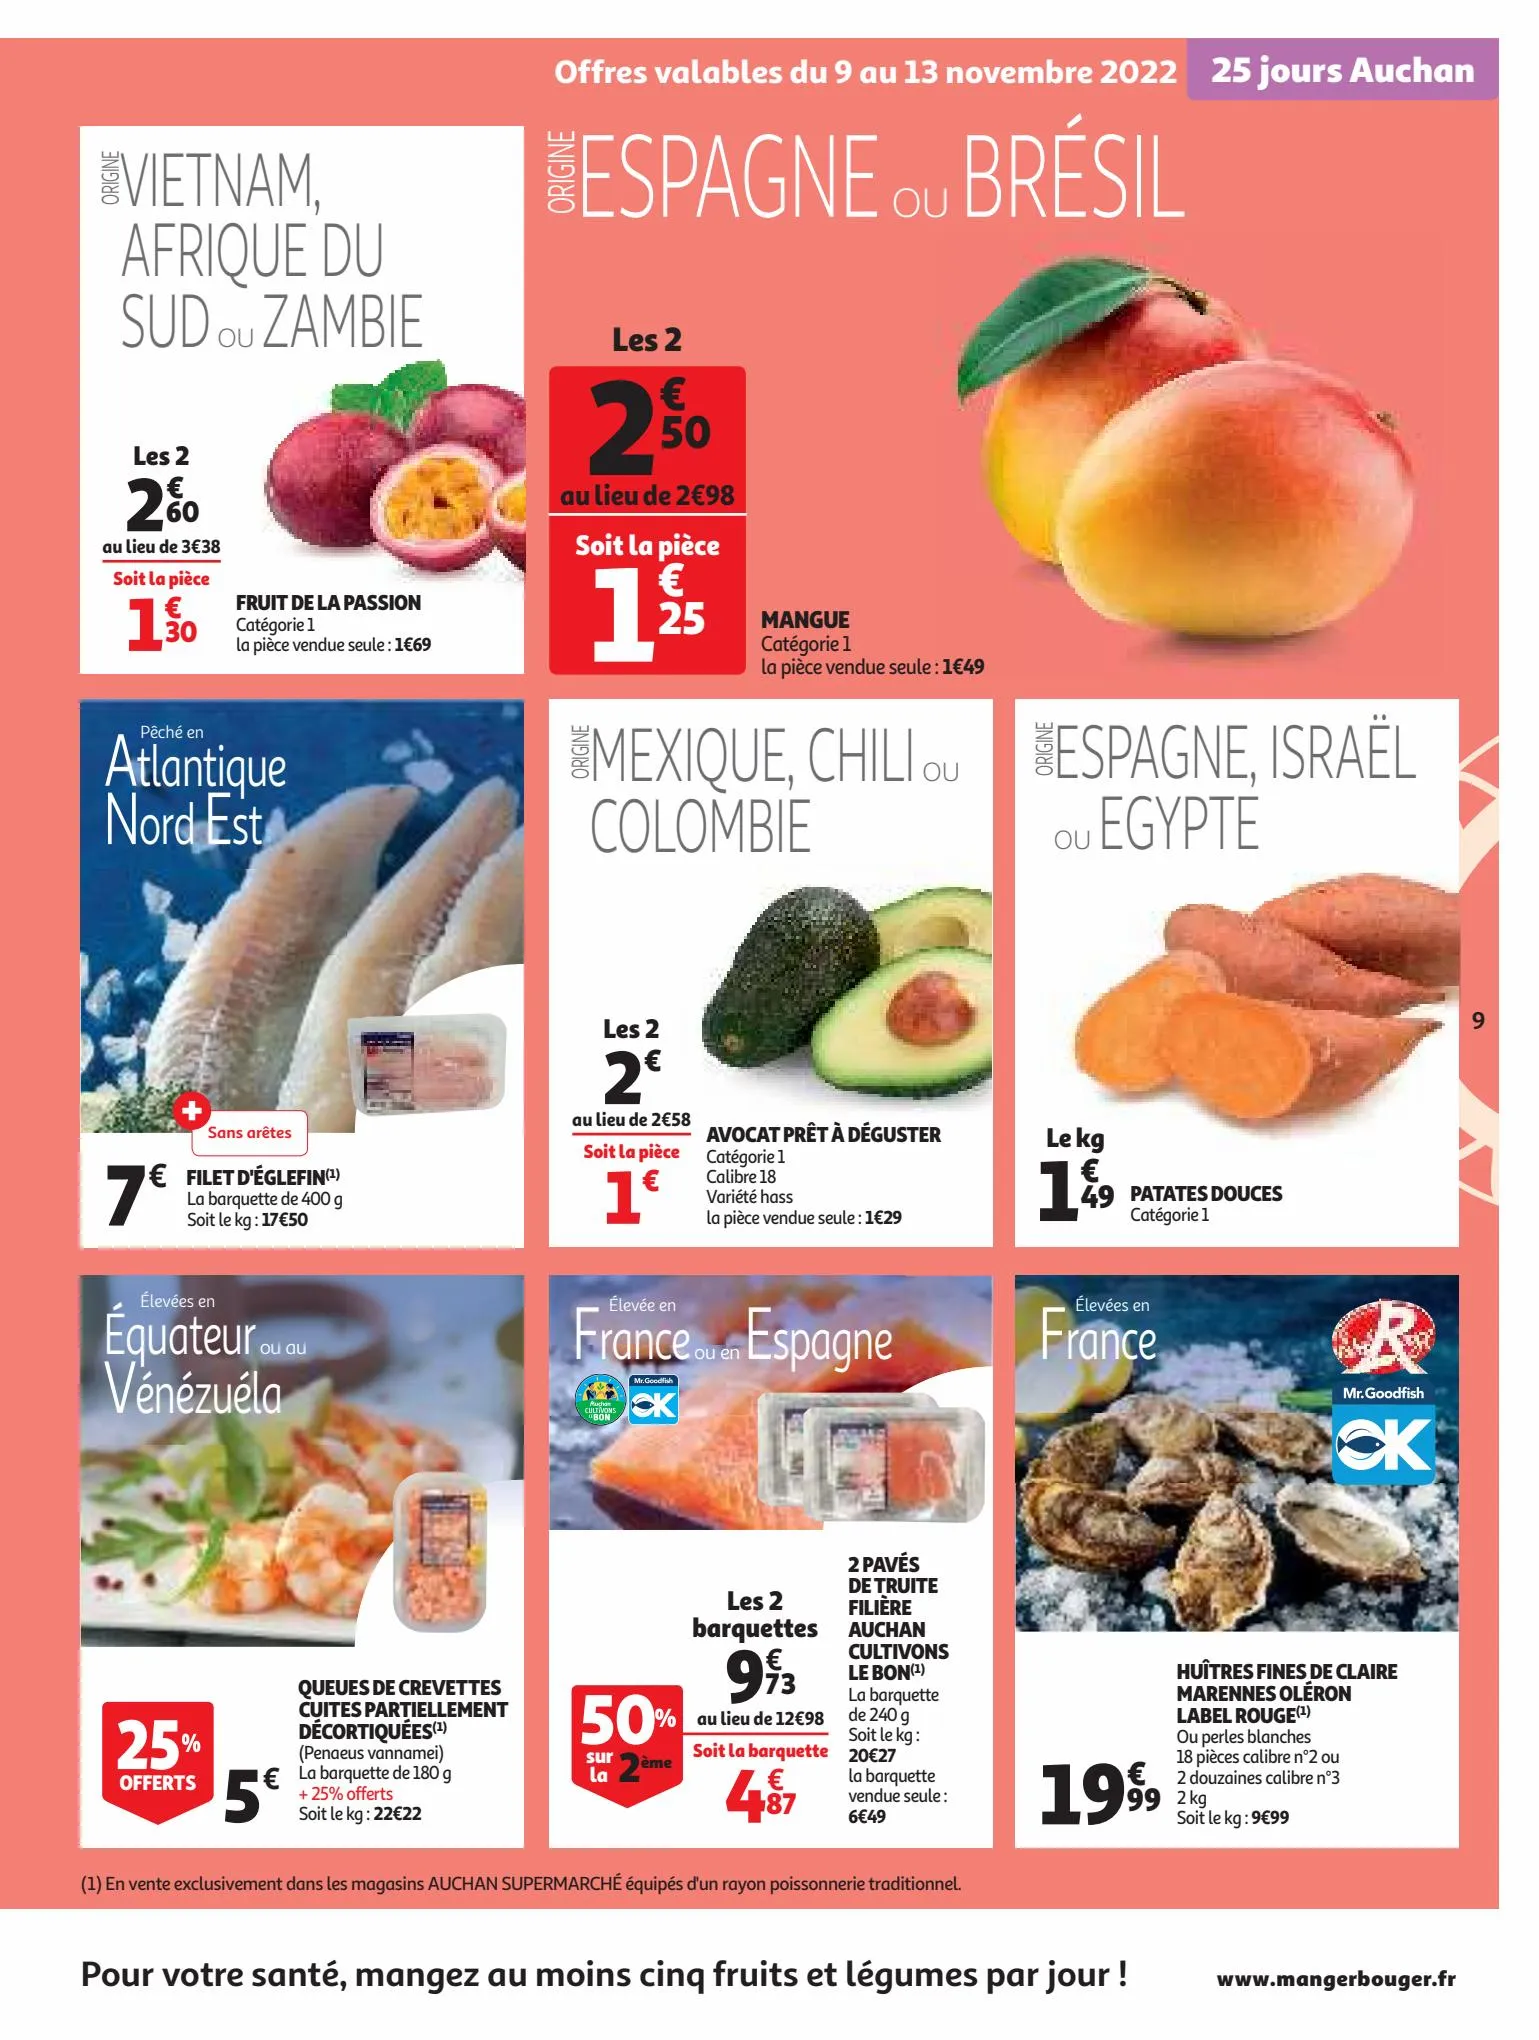 Catalogue 25 Jours Auchan, page 00009